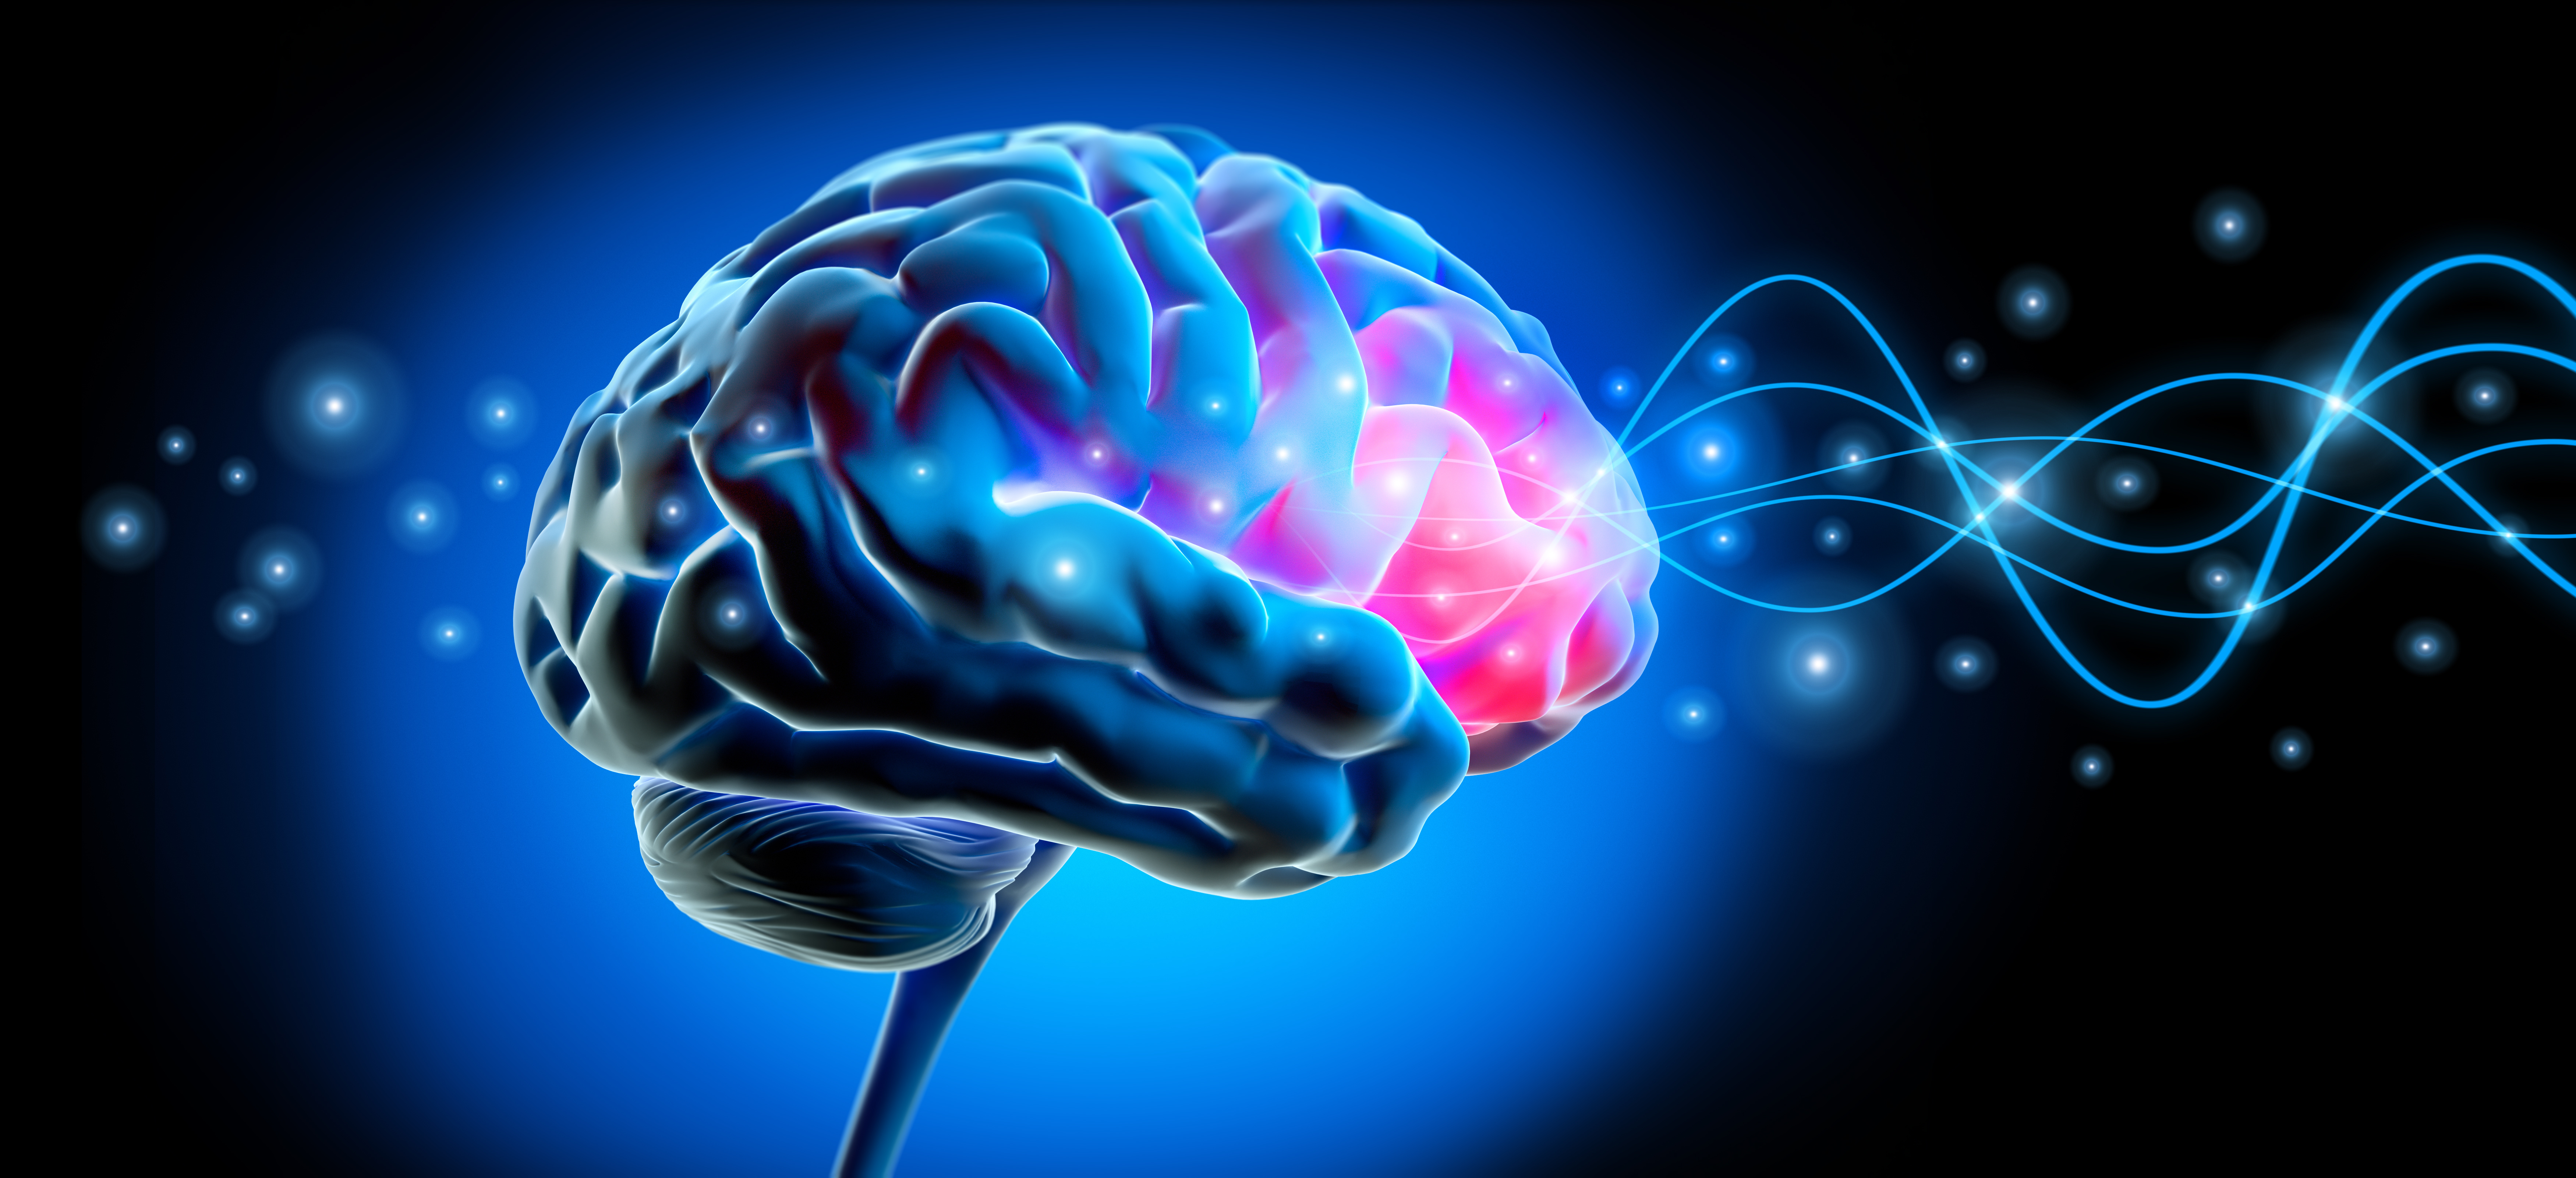 Brain 189. Здоровье мозга. Brain Healing. Theta Healing Brain. Brain Colours Concept forward 9.